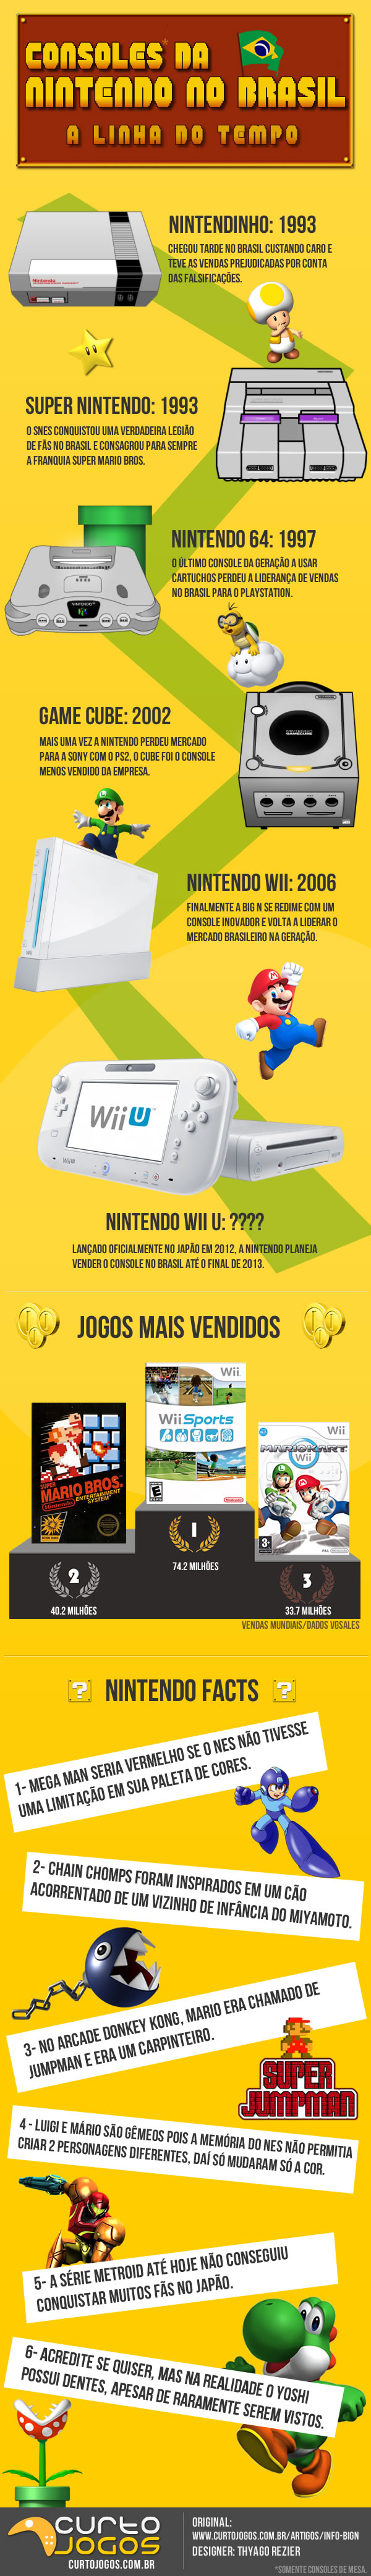 Inforgrafico-Nintendo-Brasil